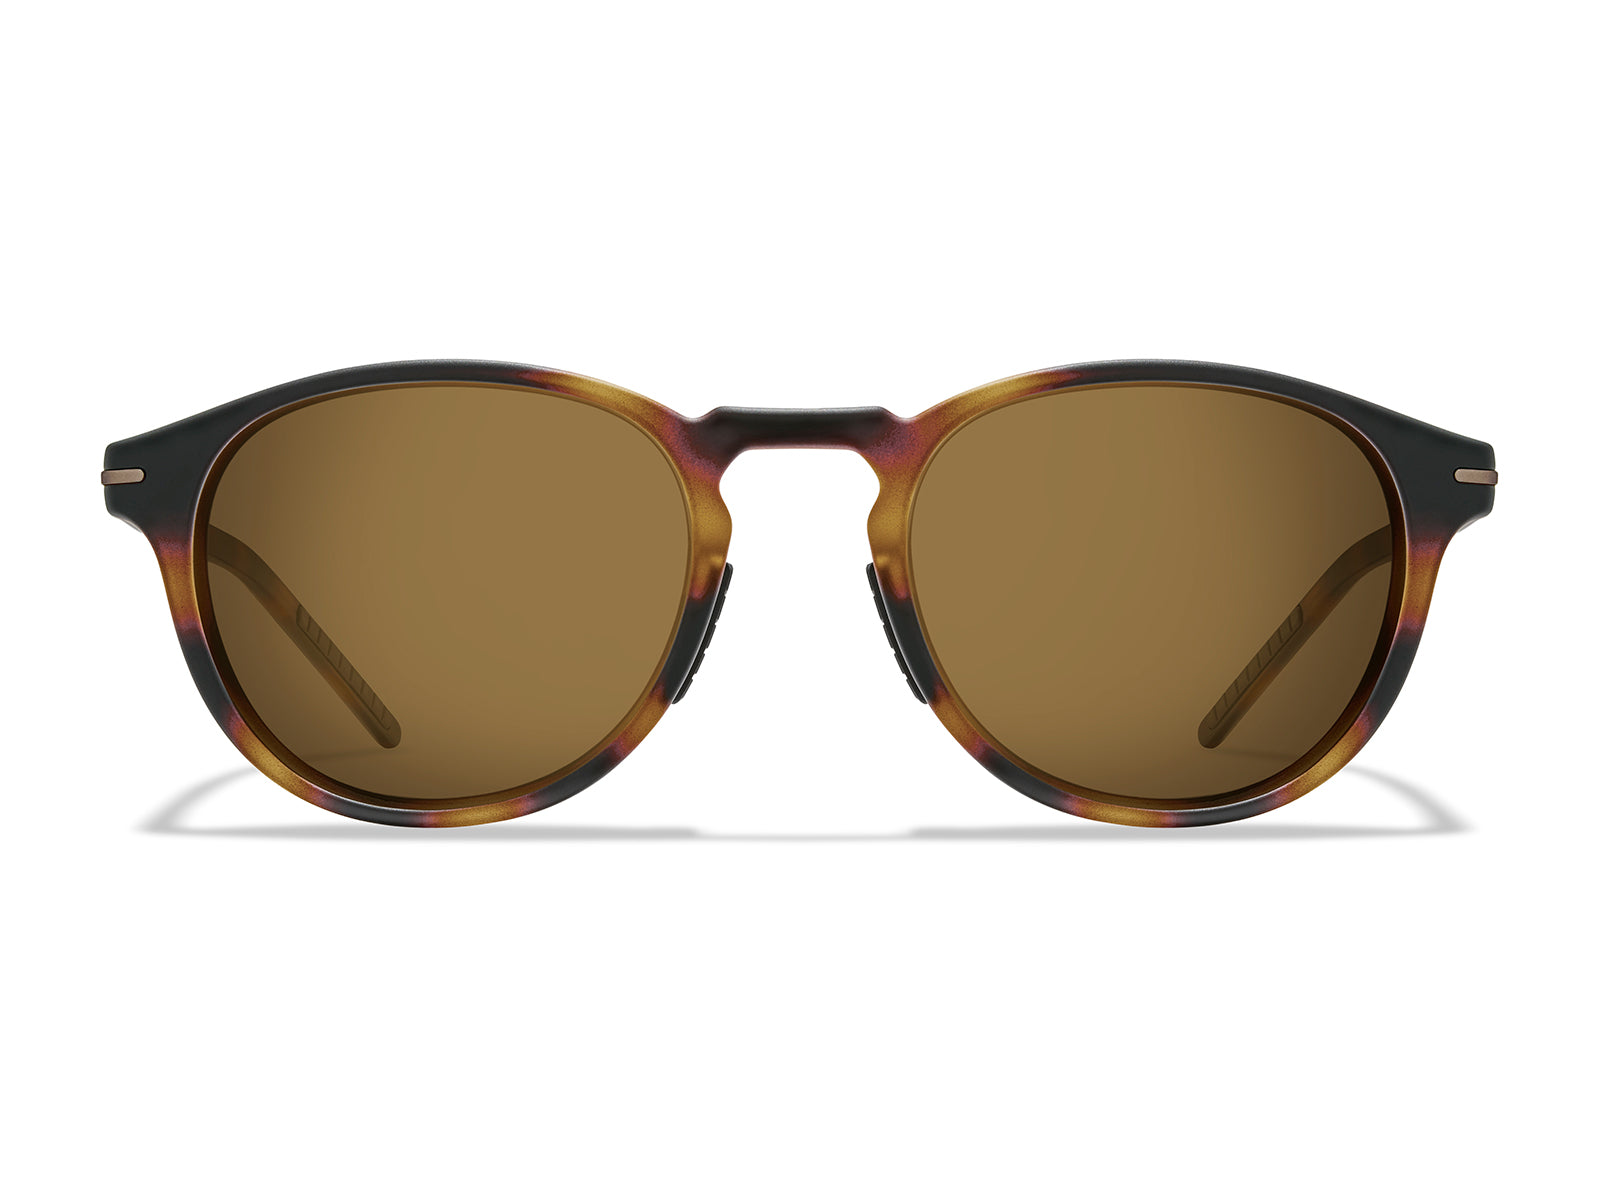 Oslo Sunglasses - Round & Ultra Lightweight